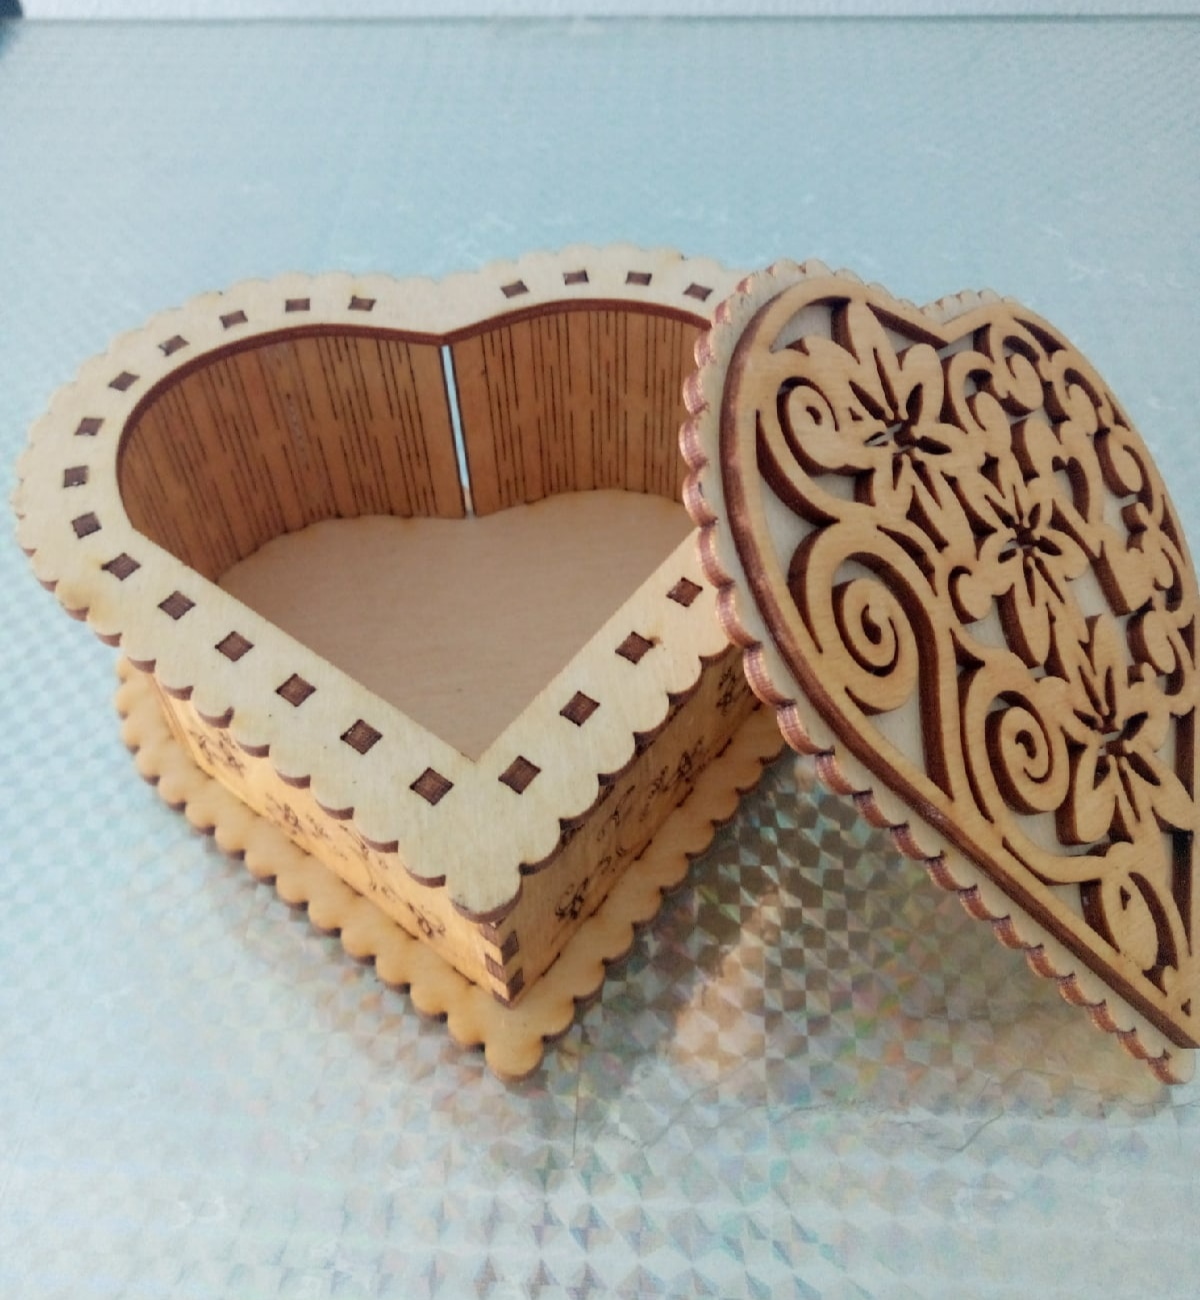 लेजर कट लकड़ी के दिल के आकार का बॉक्स